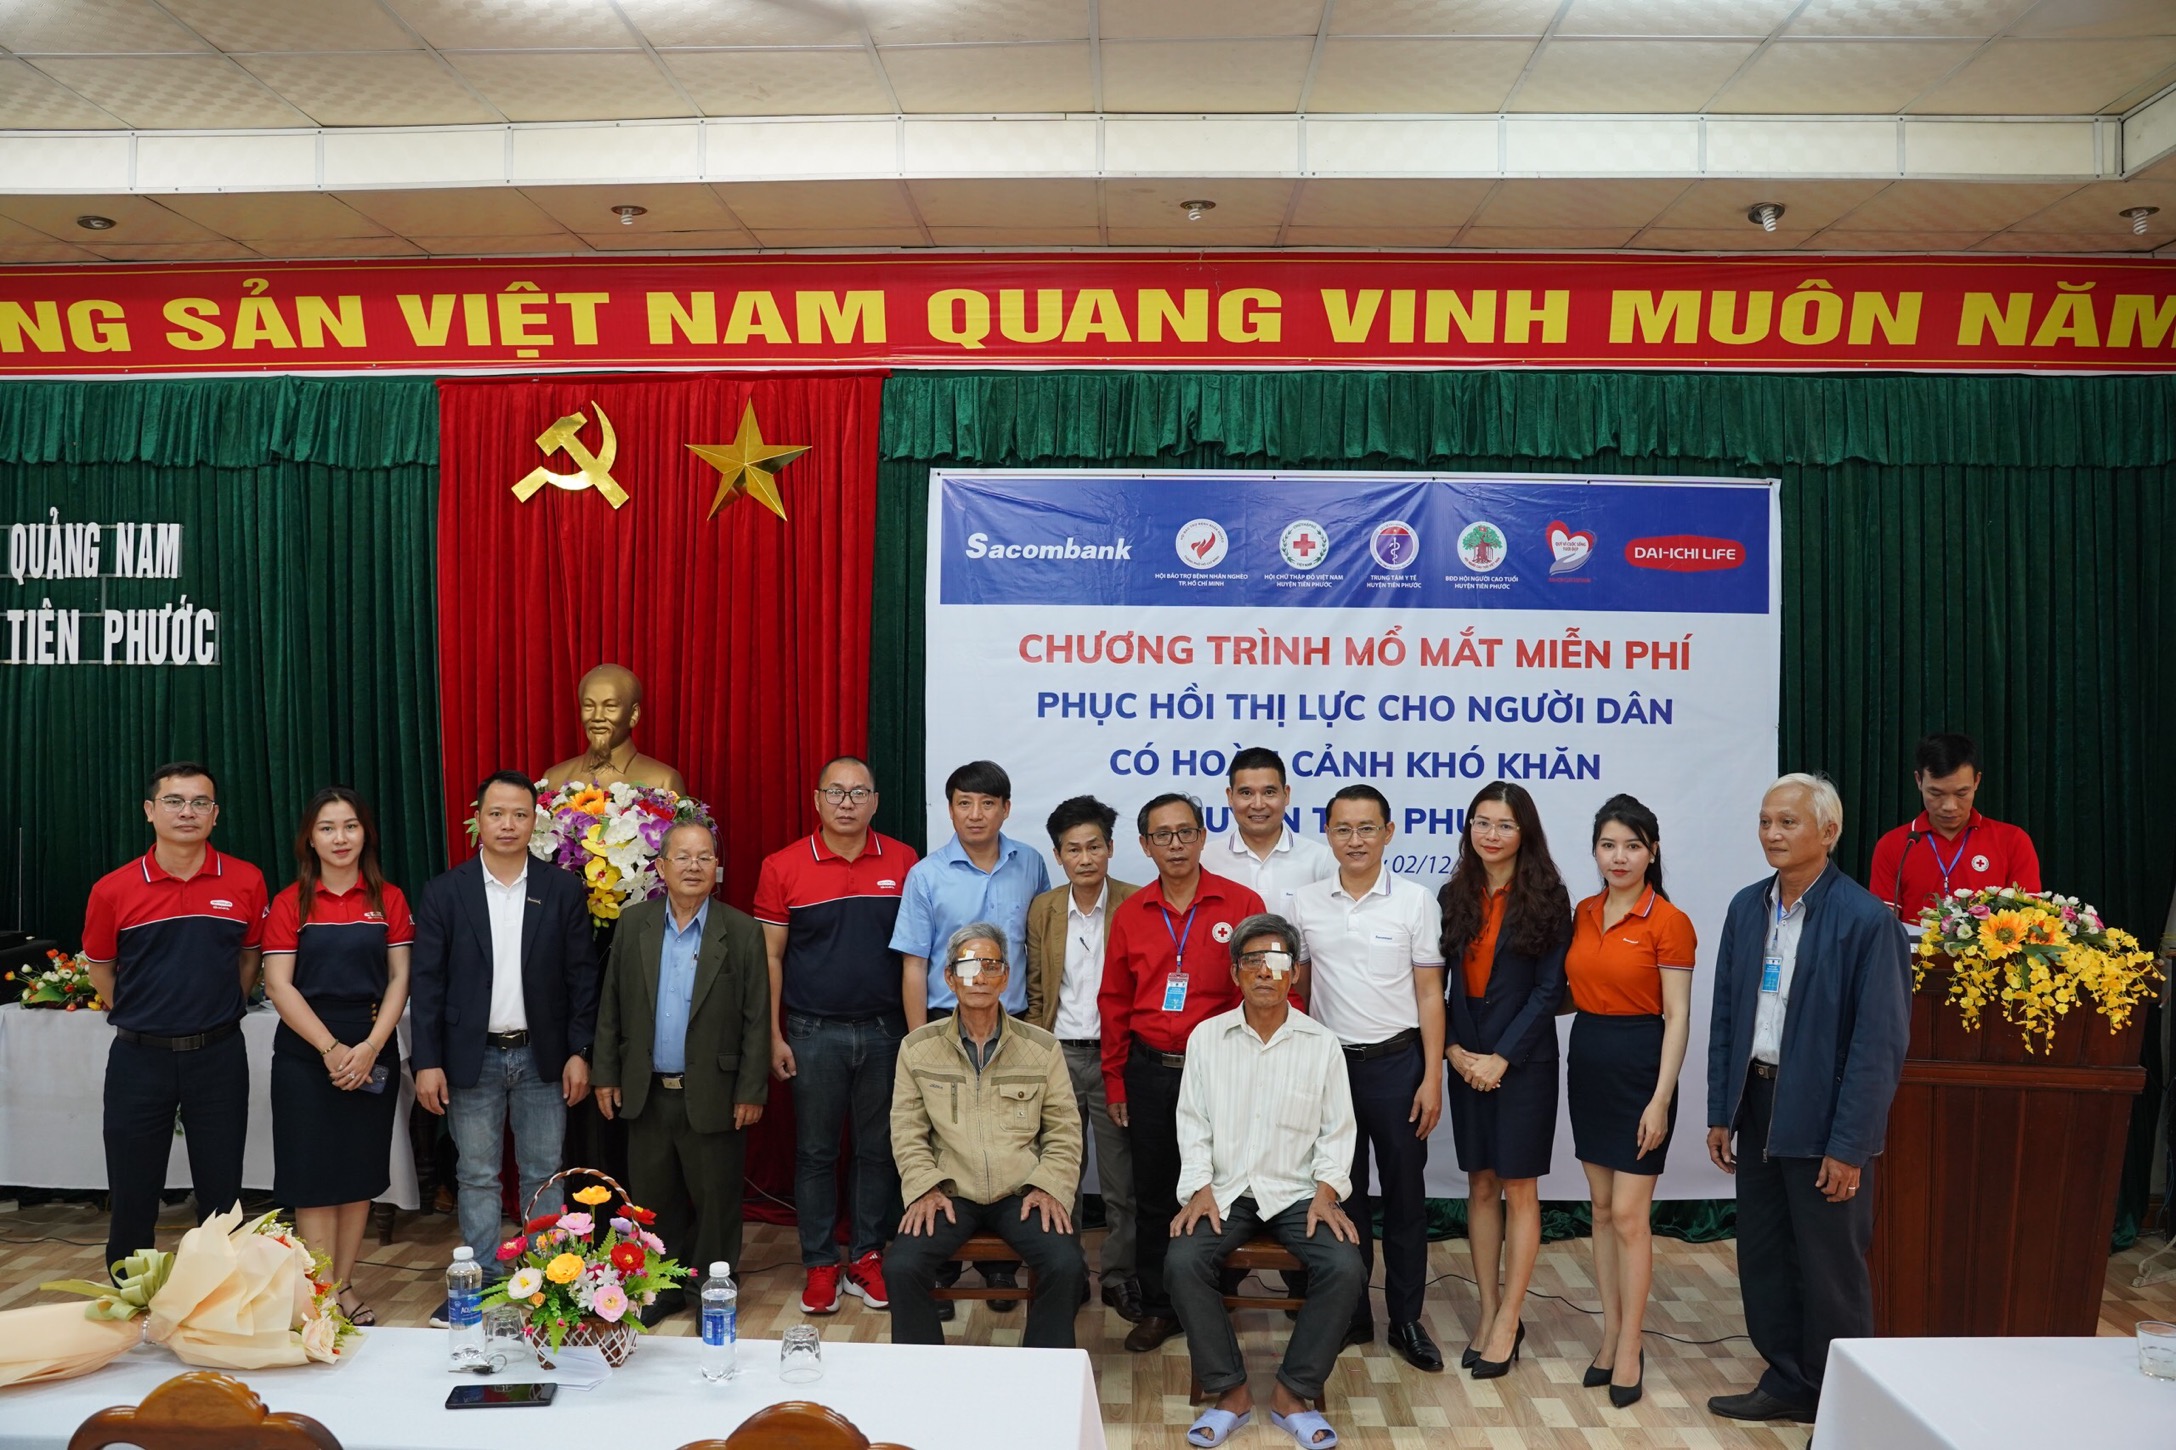 Chương trình mổ mắt miễn phí, phục hồi thị lực cho người dân có hoàn cảnh khó khăn tại Quảng Nam